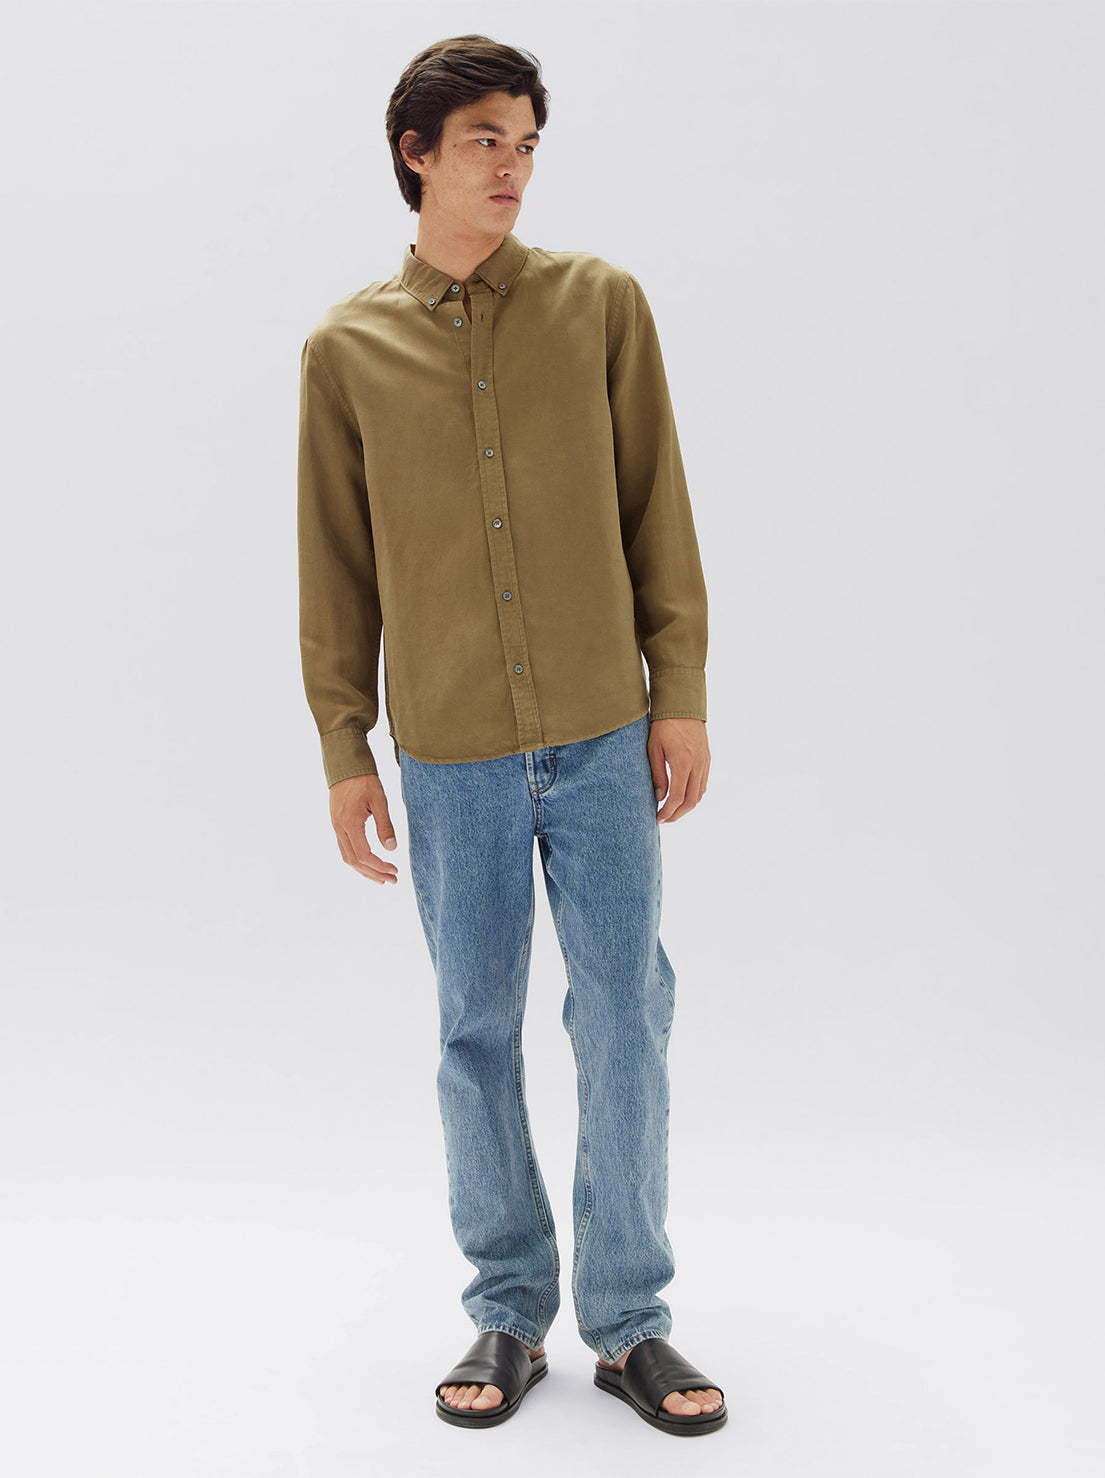 Assembly - Rosco Long Sleeve Shirt - Pea